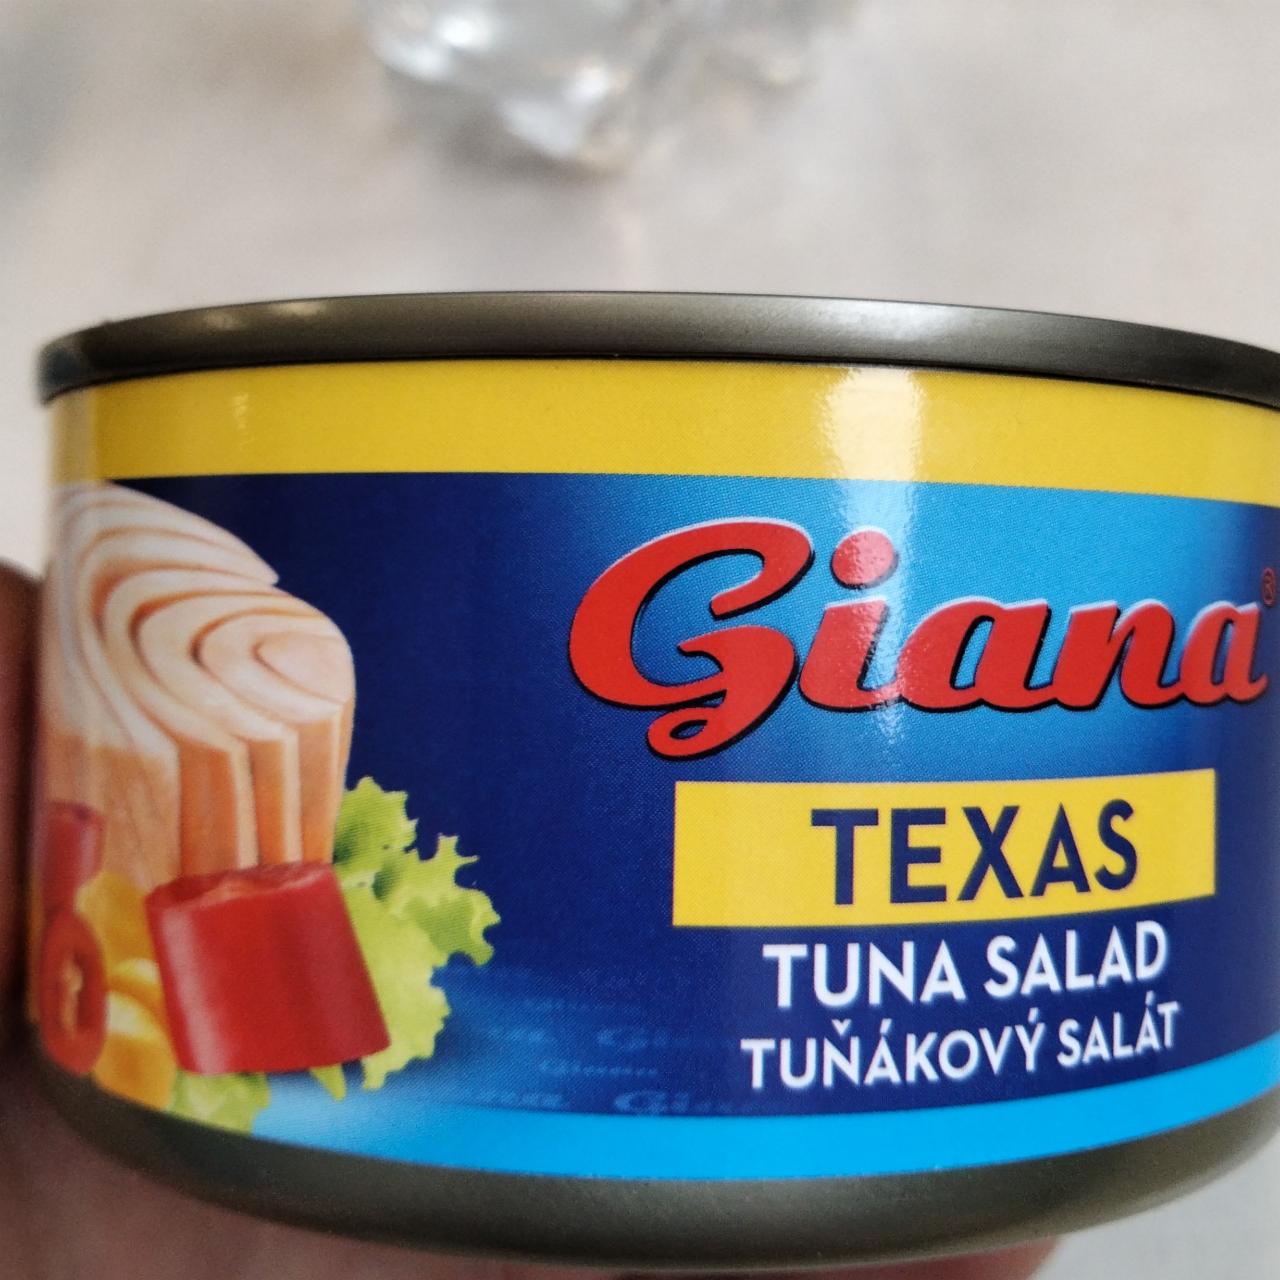 Фото - Салат из тунца Tuna Salad Texas Giana